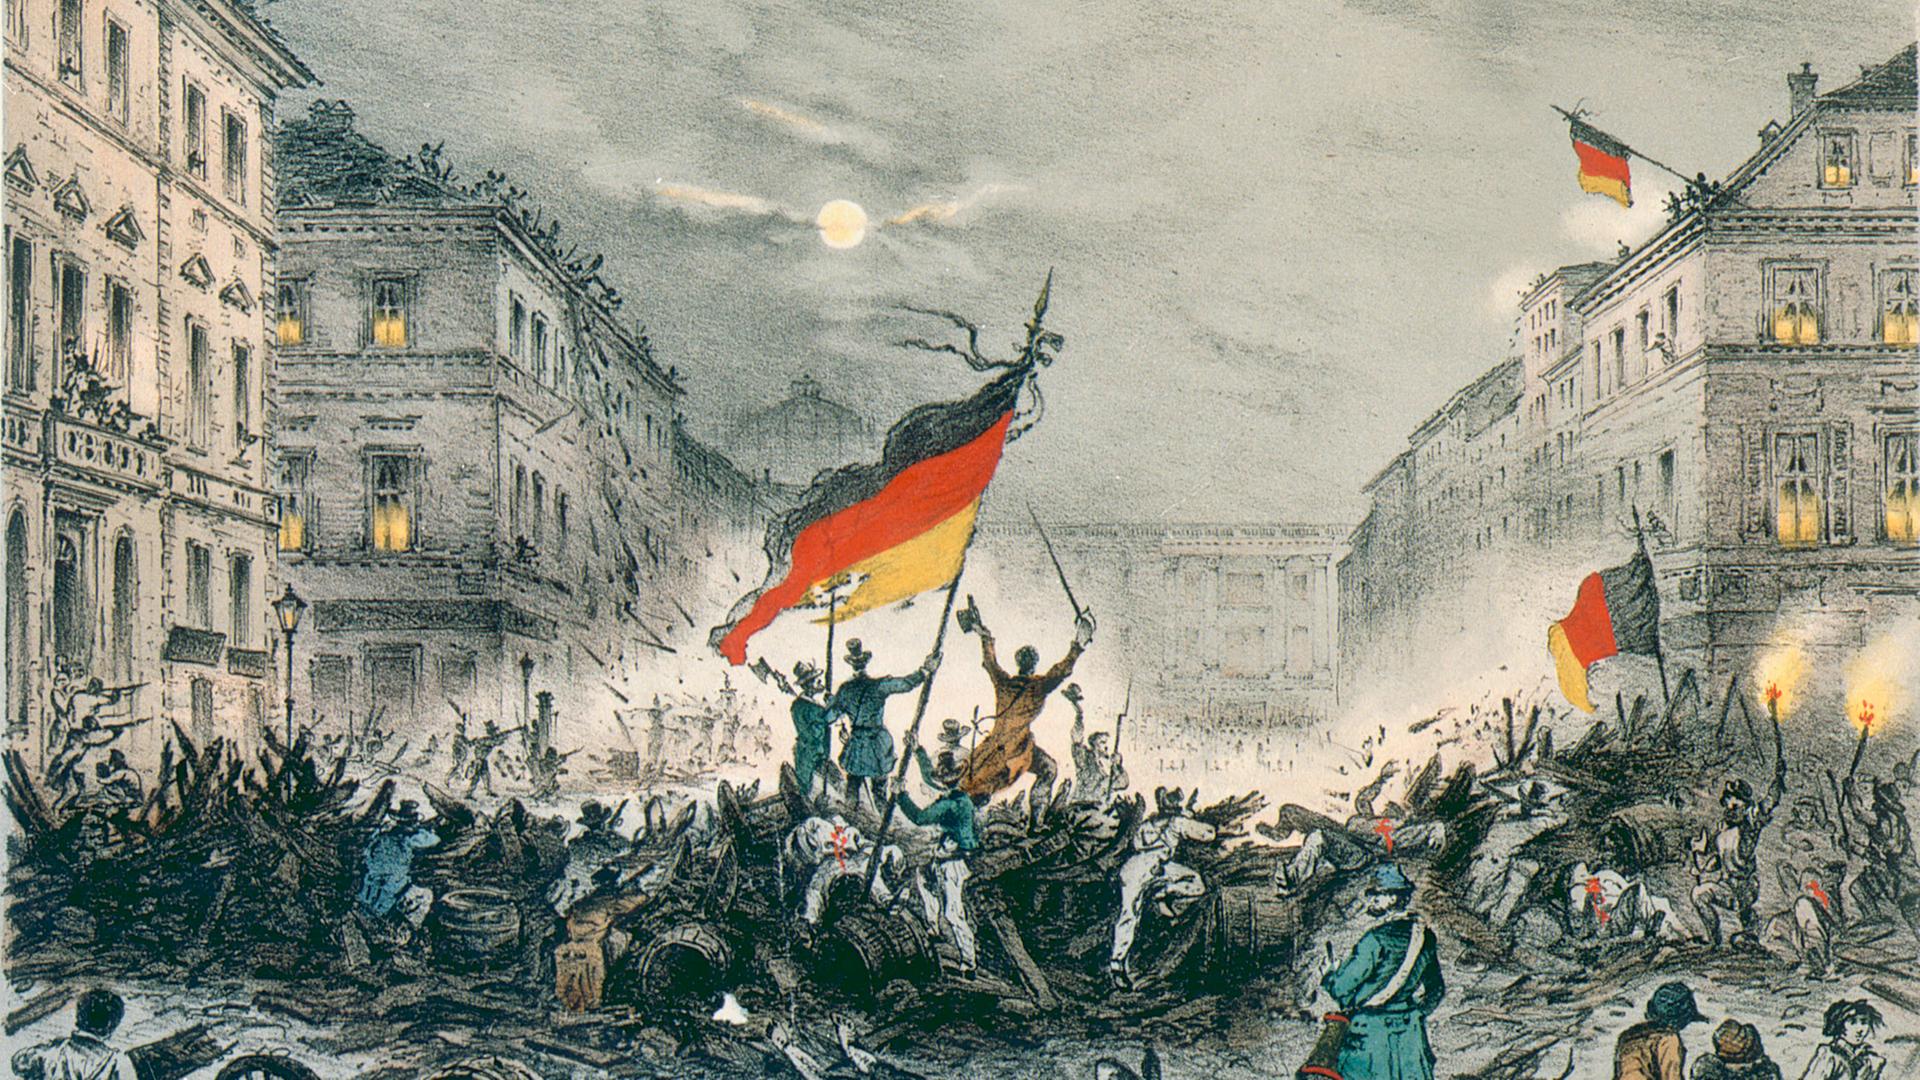 Eine Kreide-Litografie zeigt Straßenkämpfe in der Breite Straße in Berlin, in der Nacht vom 18. auf den 19. März 1848 – die Märzrevolution.